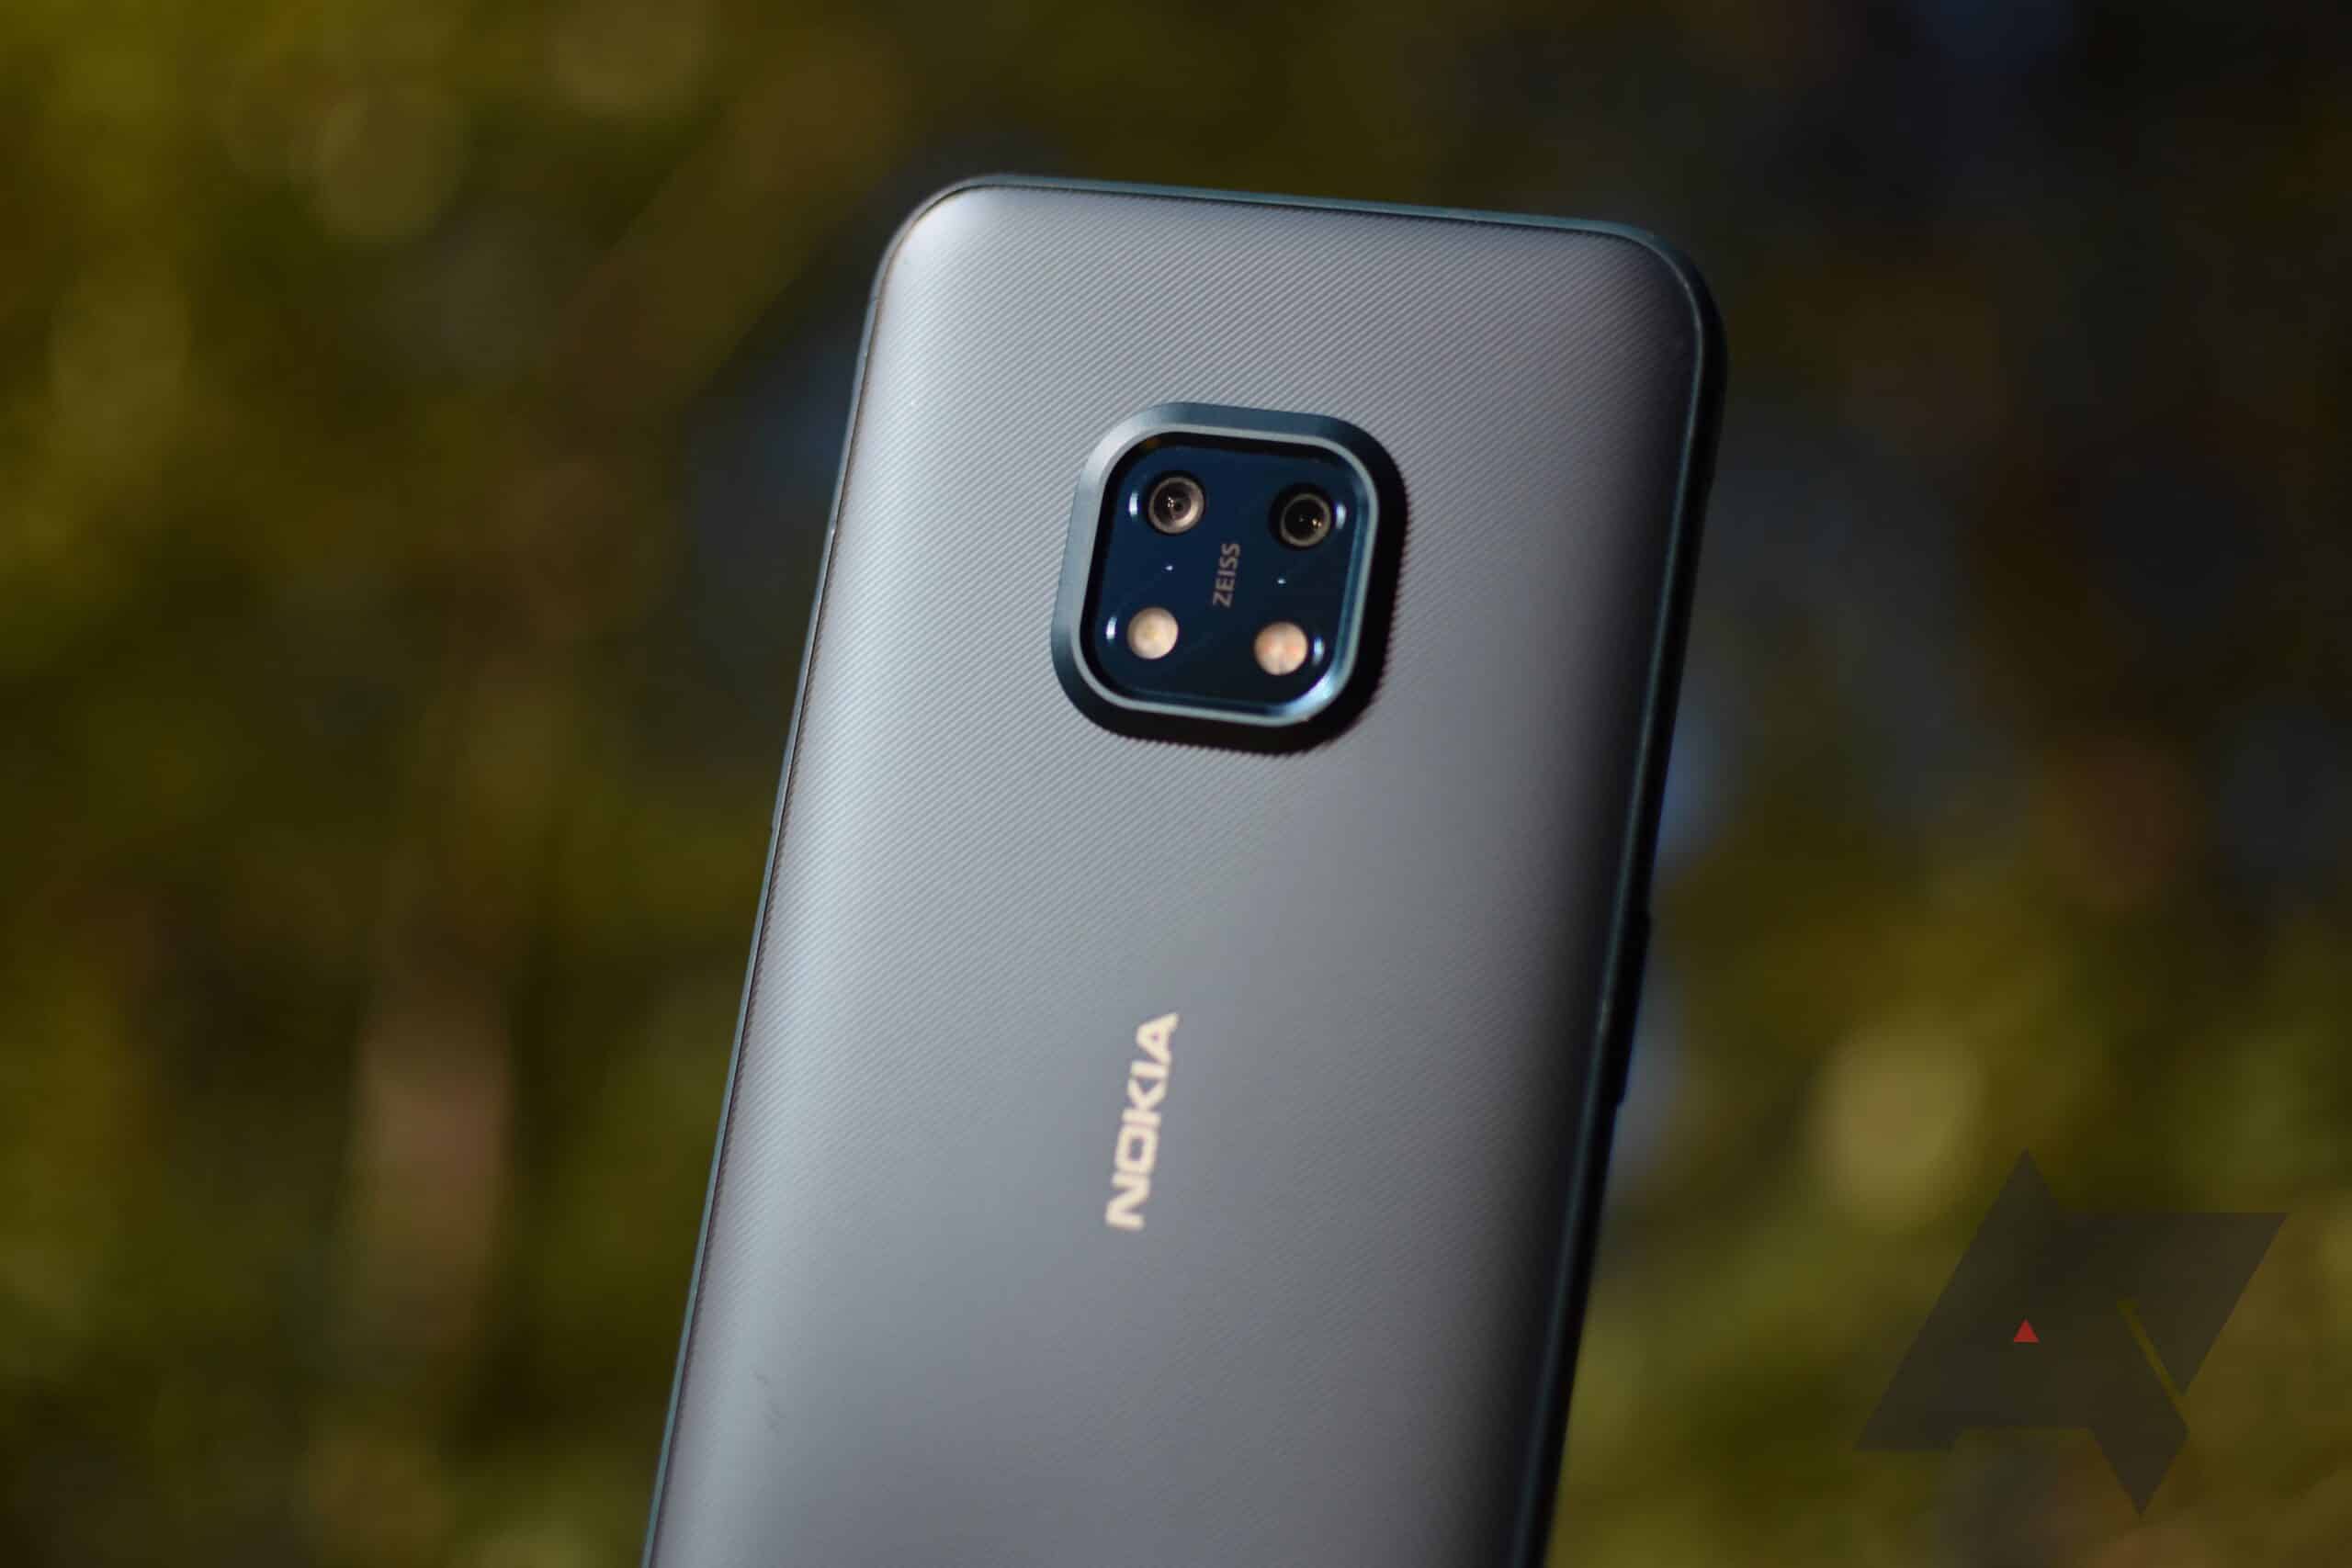 Les nouveaux téléphones Nokia ne seront pas équipés d'appareils photo Zeiss nokia xr20 review 4 scaled